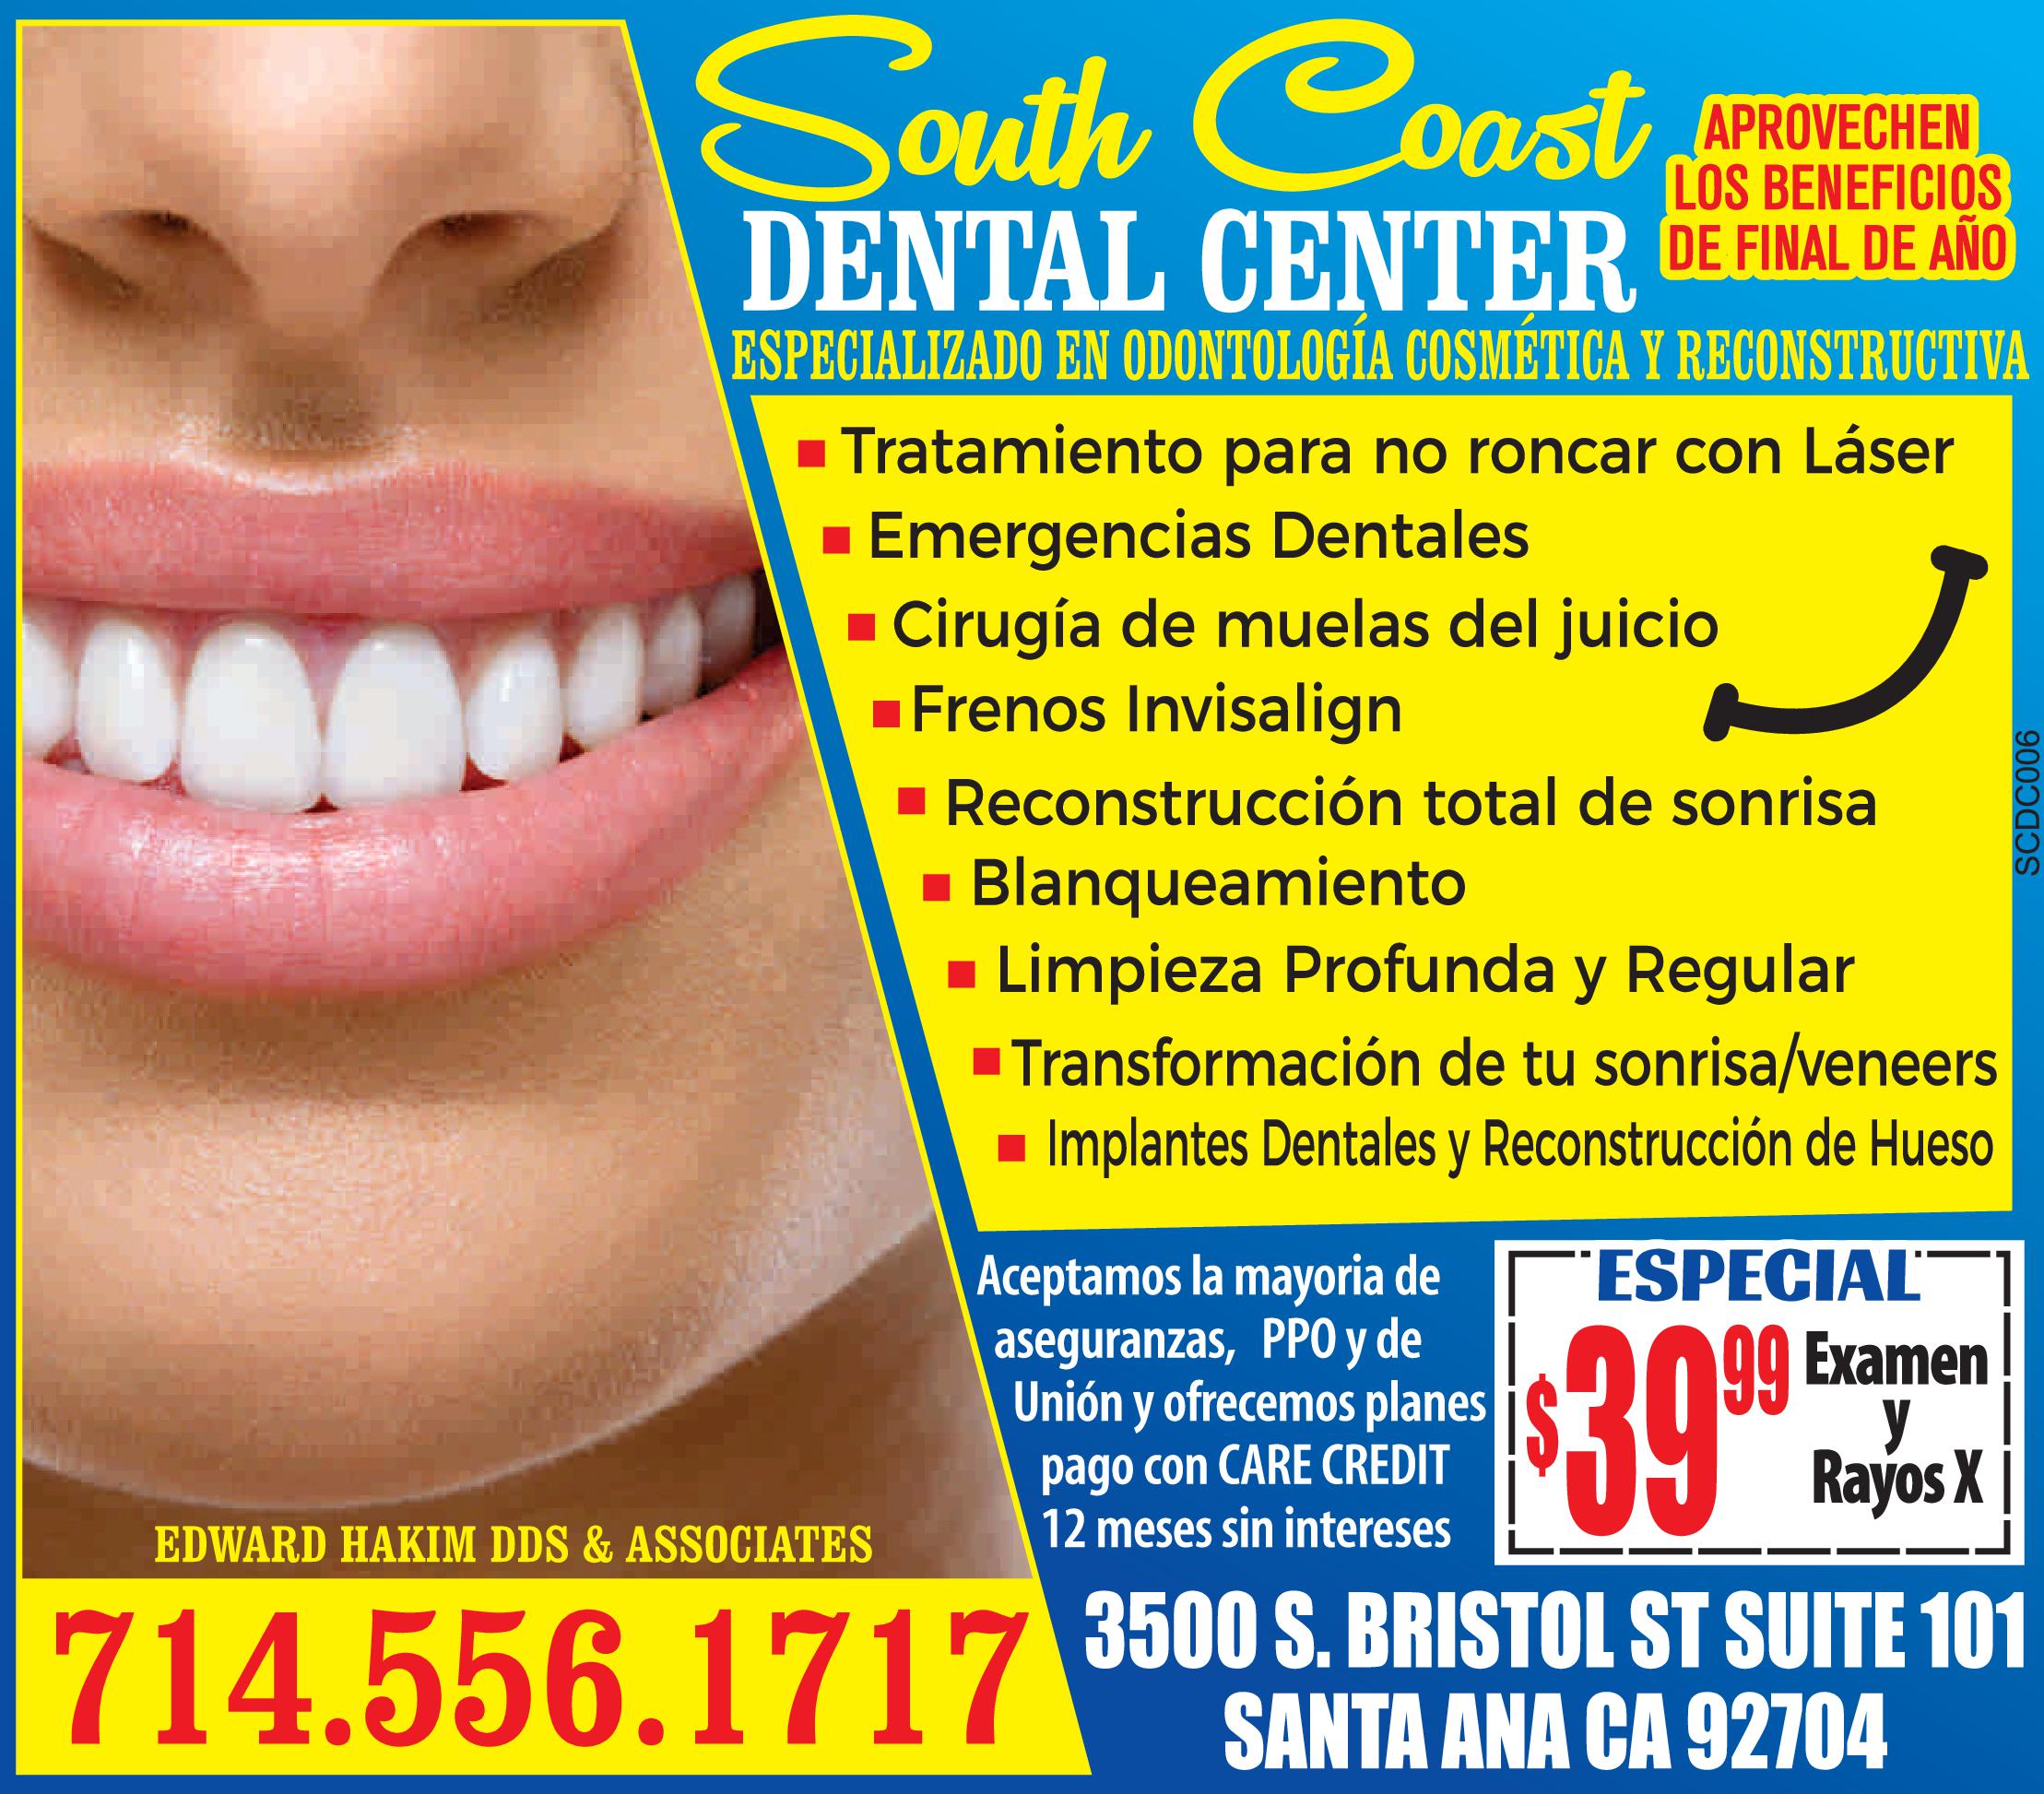 South Coast Dental Center